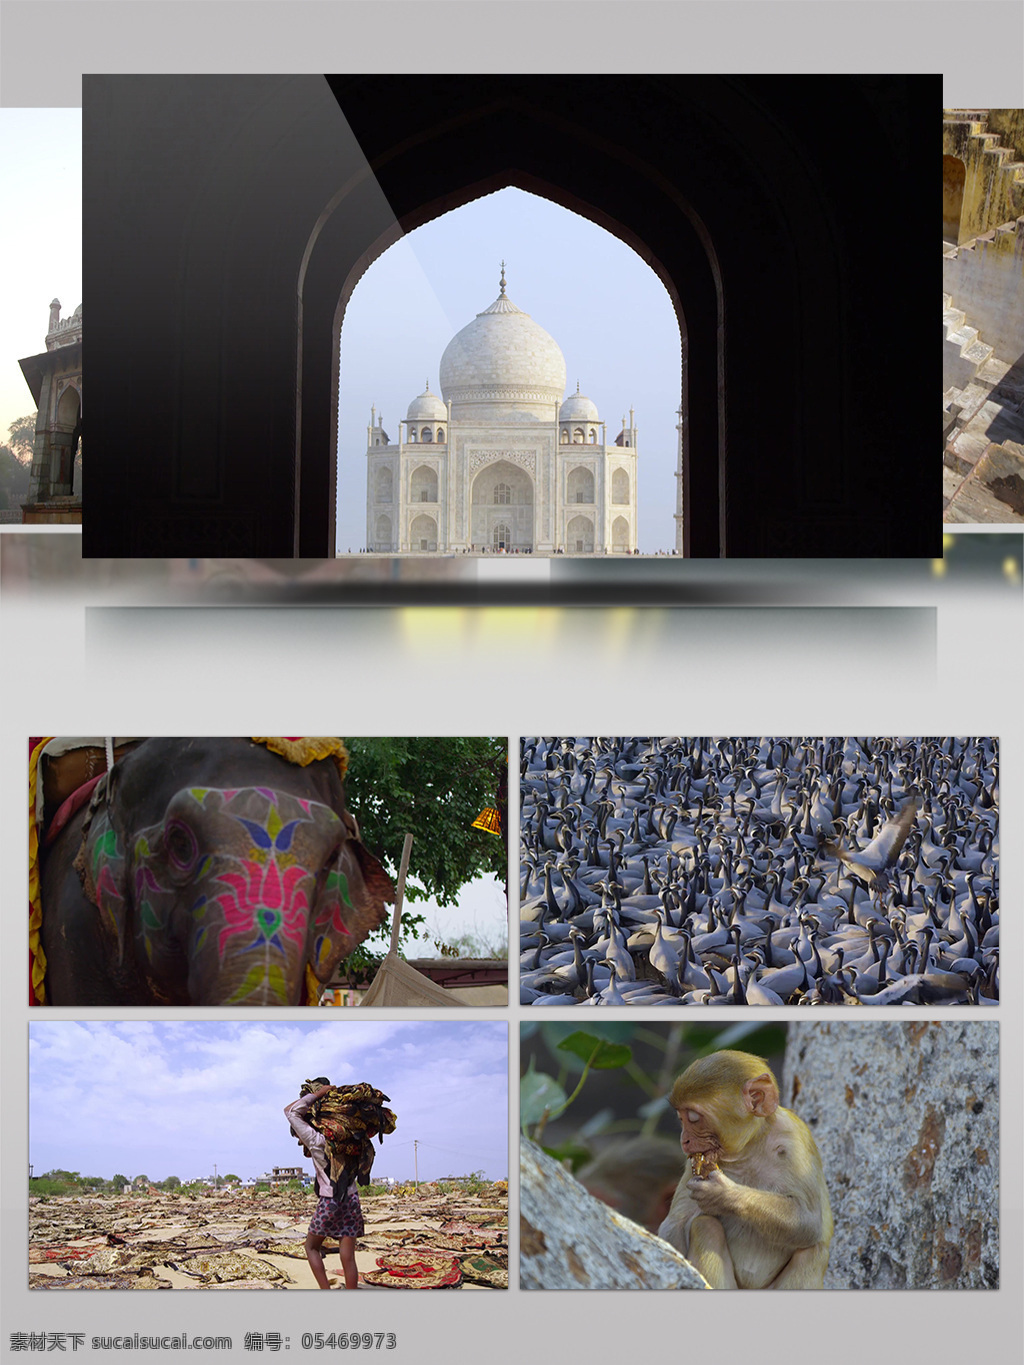 2k 印度 城市 建筑 人文 风情 沙漠 骆驼 宣传片 风景 大象 猴子 历史 城市景观 特色